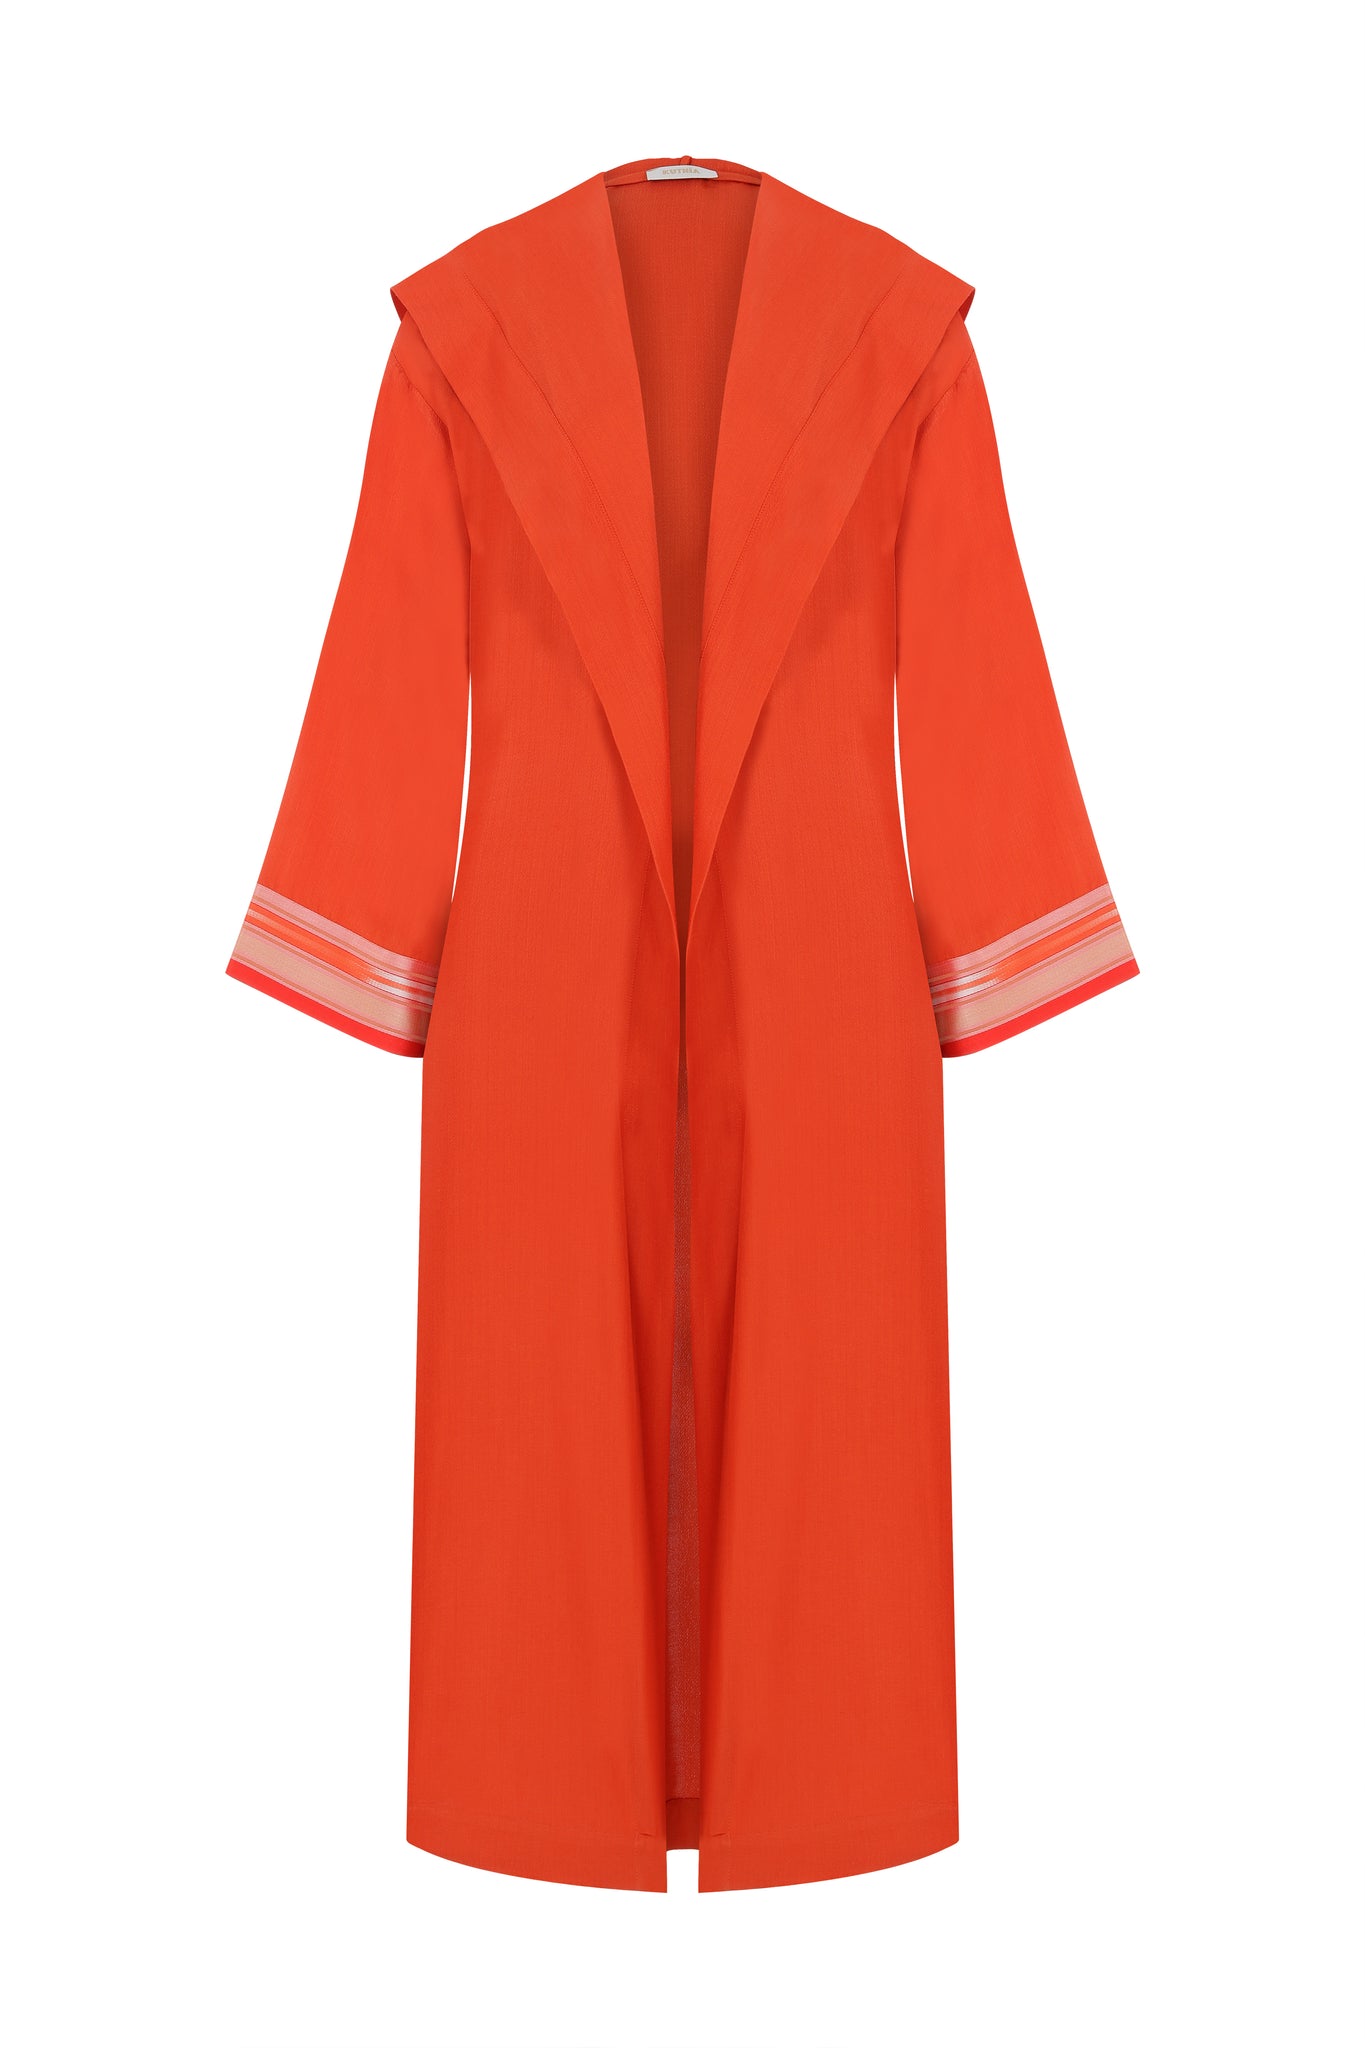 Hooded Orange Kimono